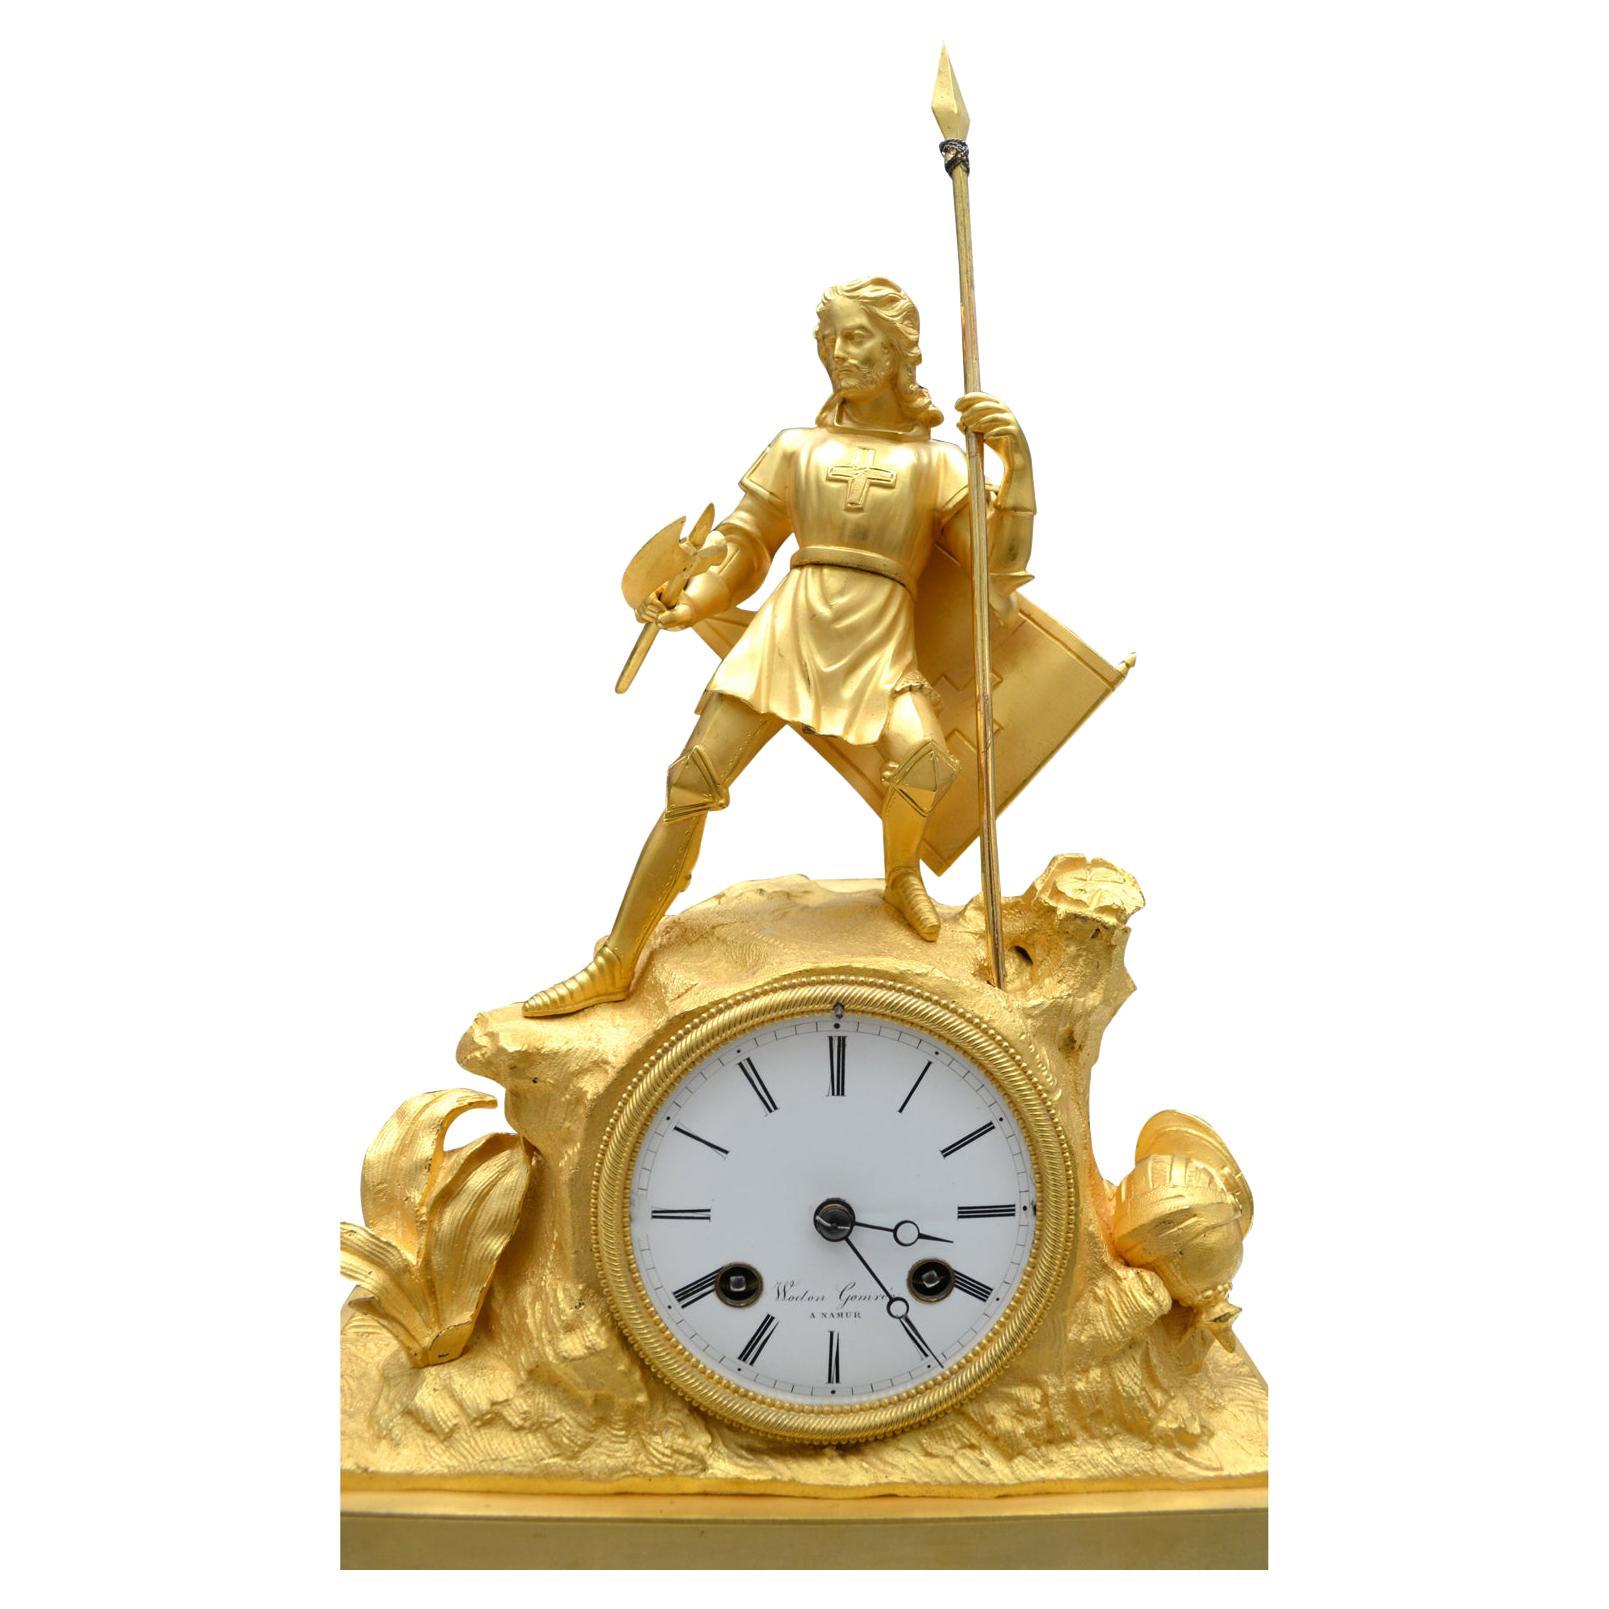 Une horloge figurative en bronze doré finement coulé montrant un chevalier croisé échouant sur un terrain rocheux après une bataille. Le chevalier a une lance dans une main, une hache de combat dans l'autre, son casque gît sur le sol à ses pieds et